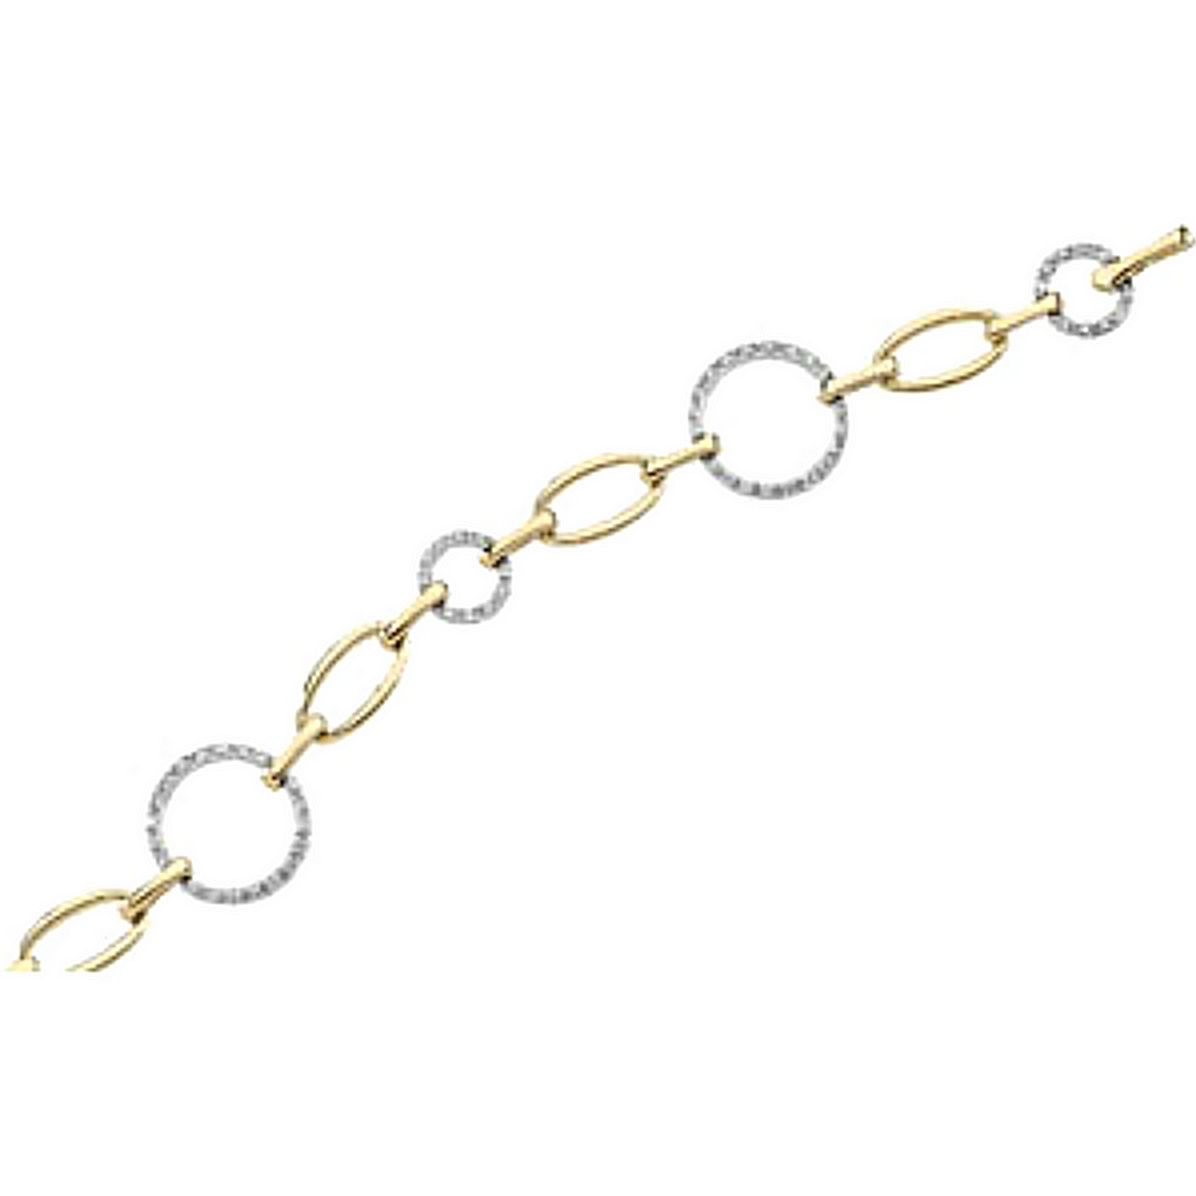 Two-Tone 1/2 CTW Diamond Bracelet, 14k Yellow and White Gold, 7.25"